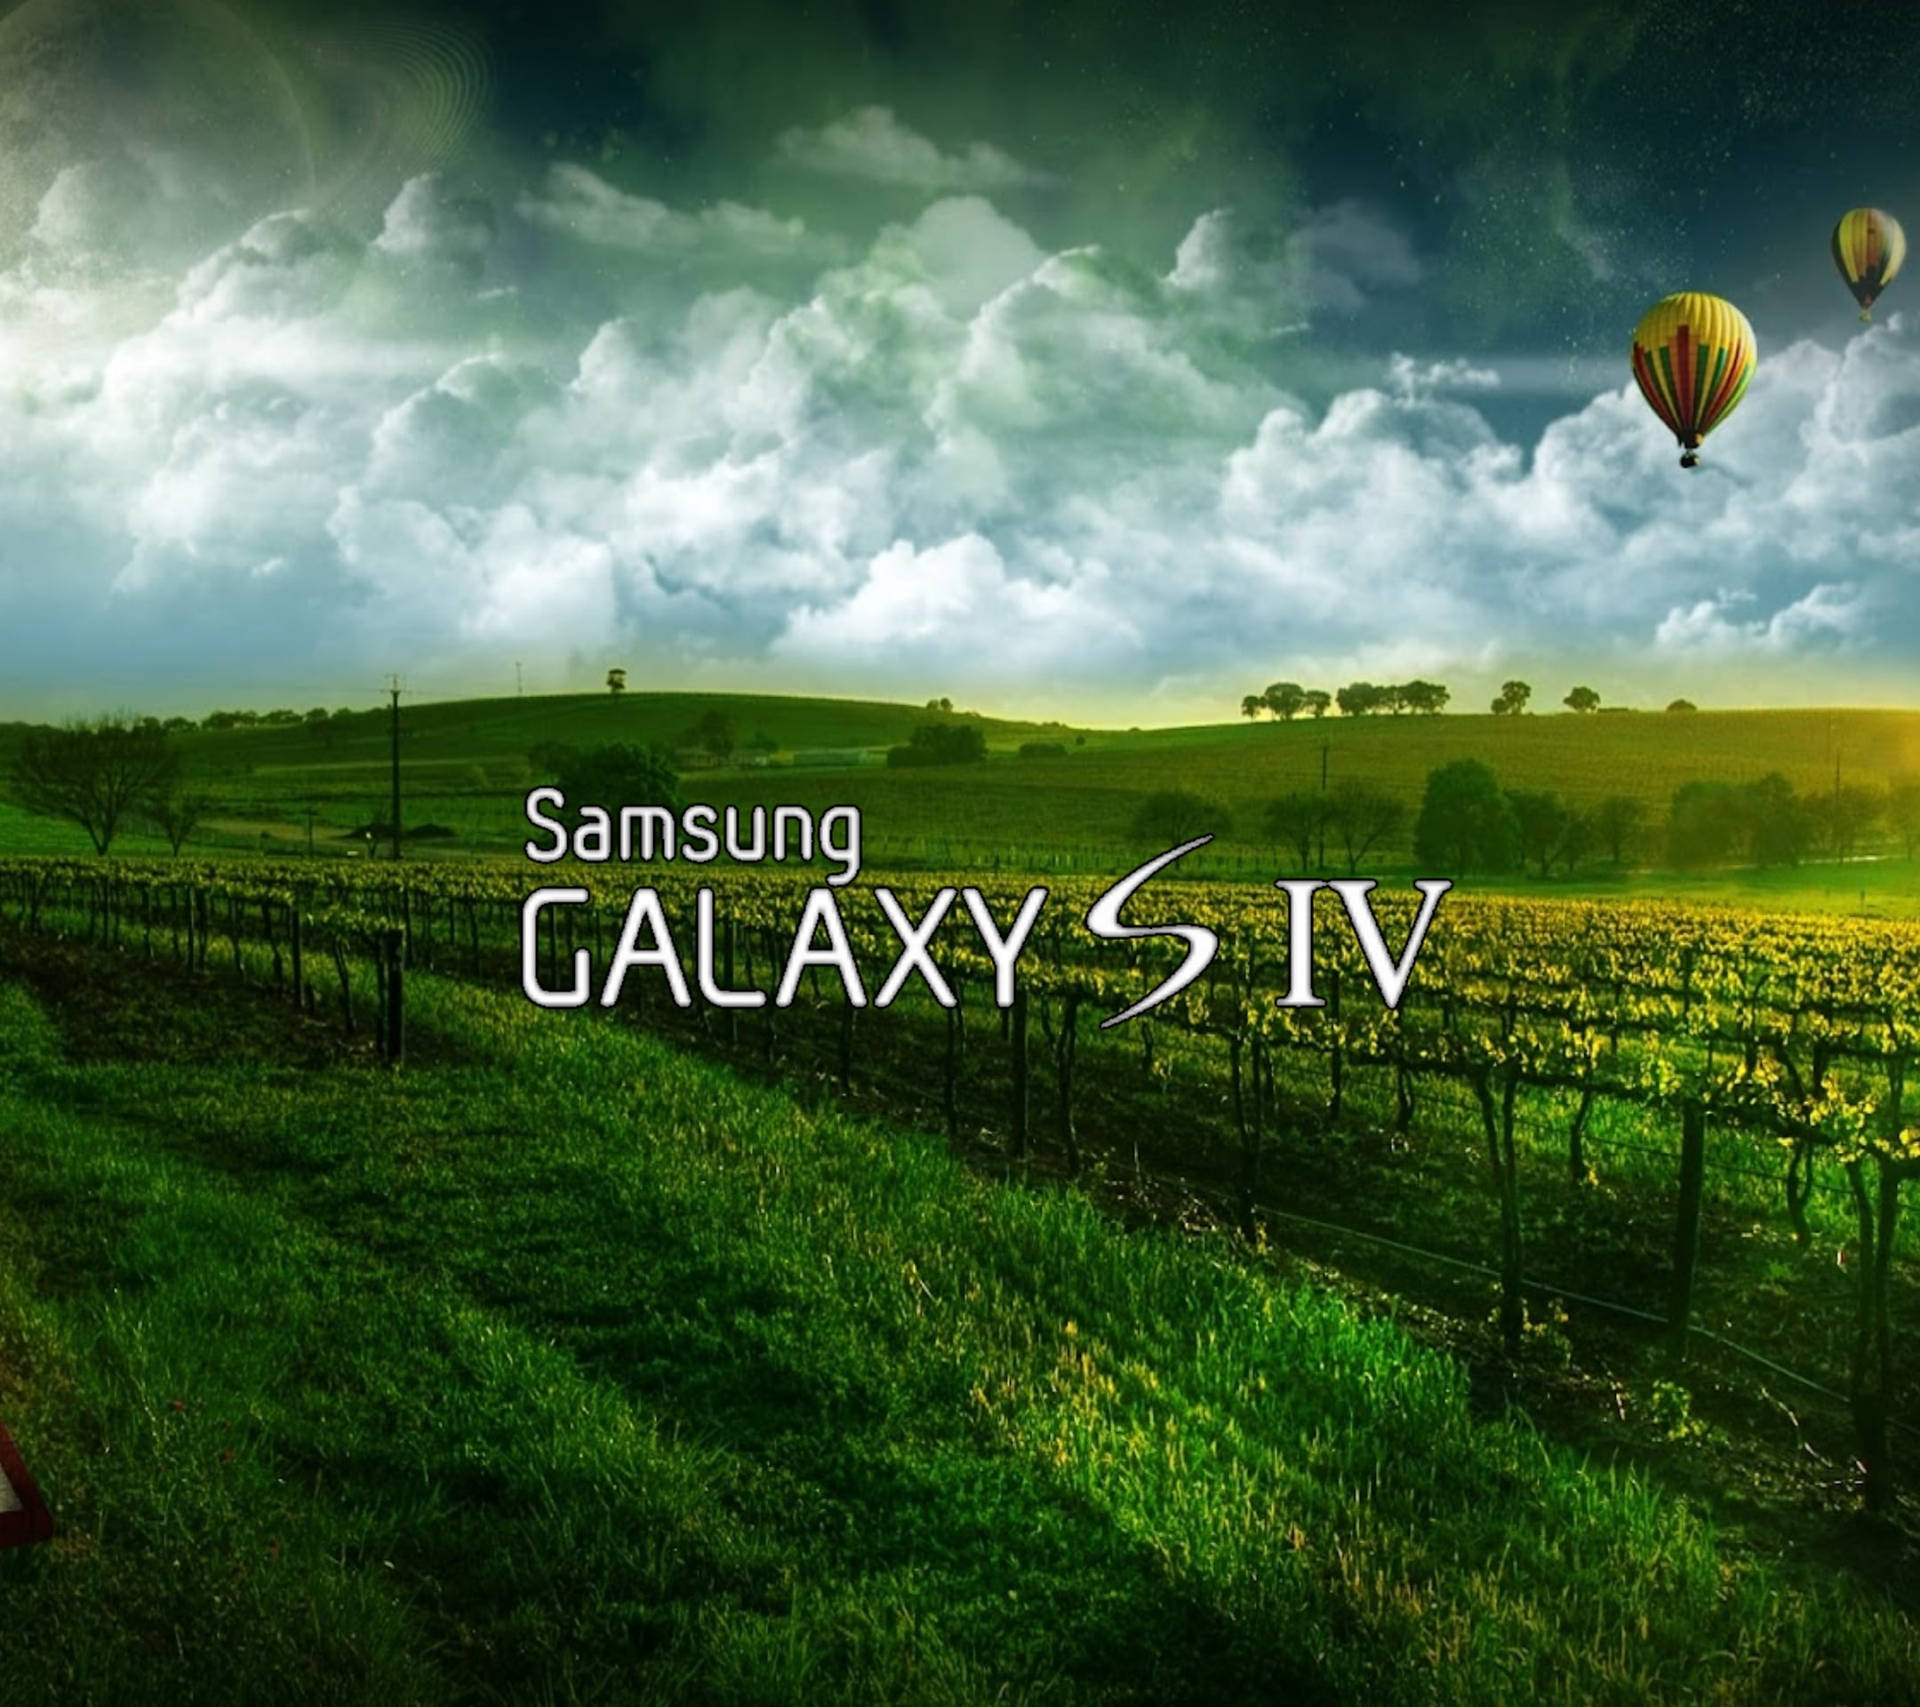 Imágenes Samsung Galaxy S4